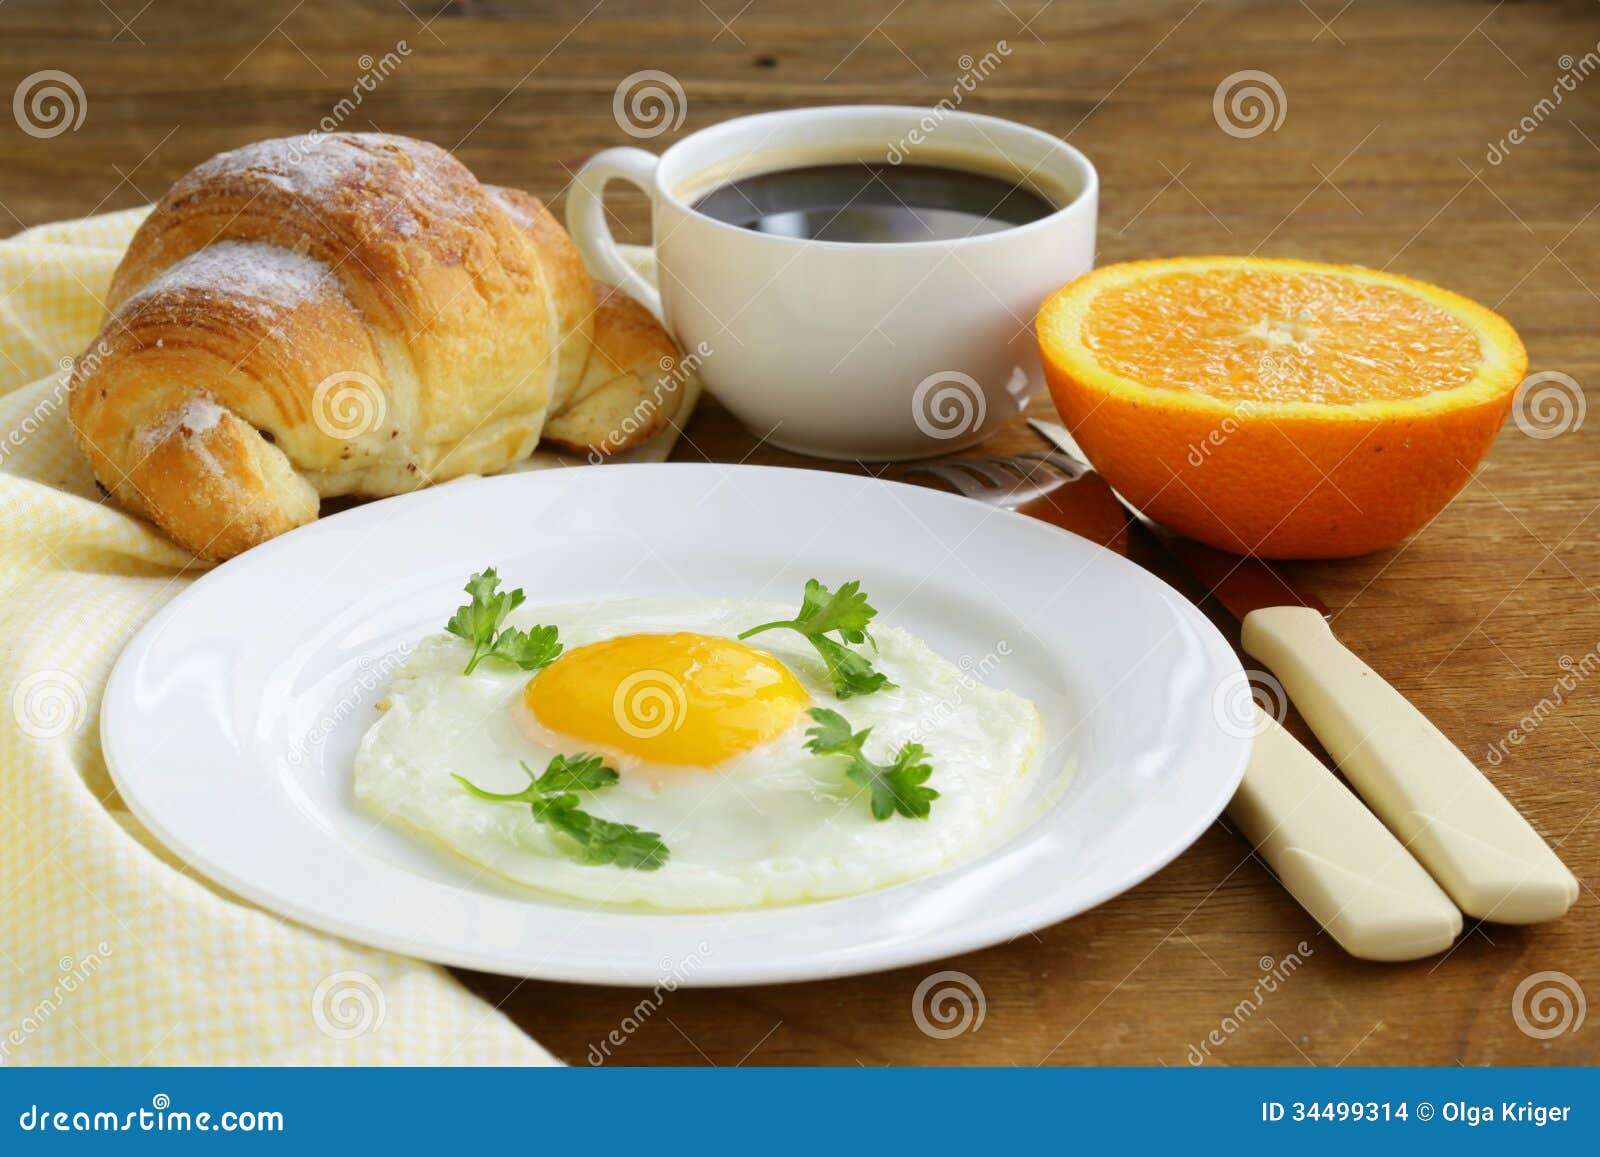 用早餐用煎蛋、新月形面包、汁液、咖啡和果子 库存照片. 图片 包括有 健康, 对象, 快餐, 食物, 膳食 - 109351062